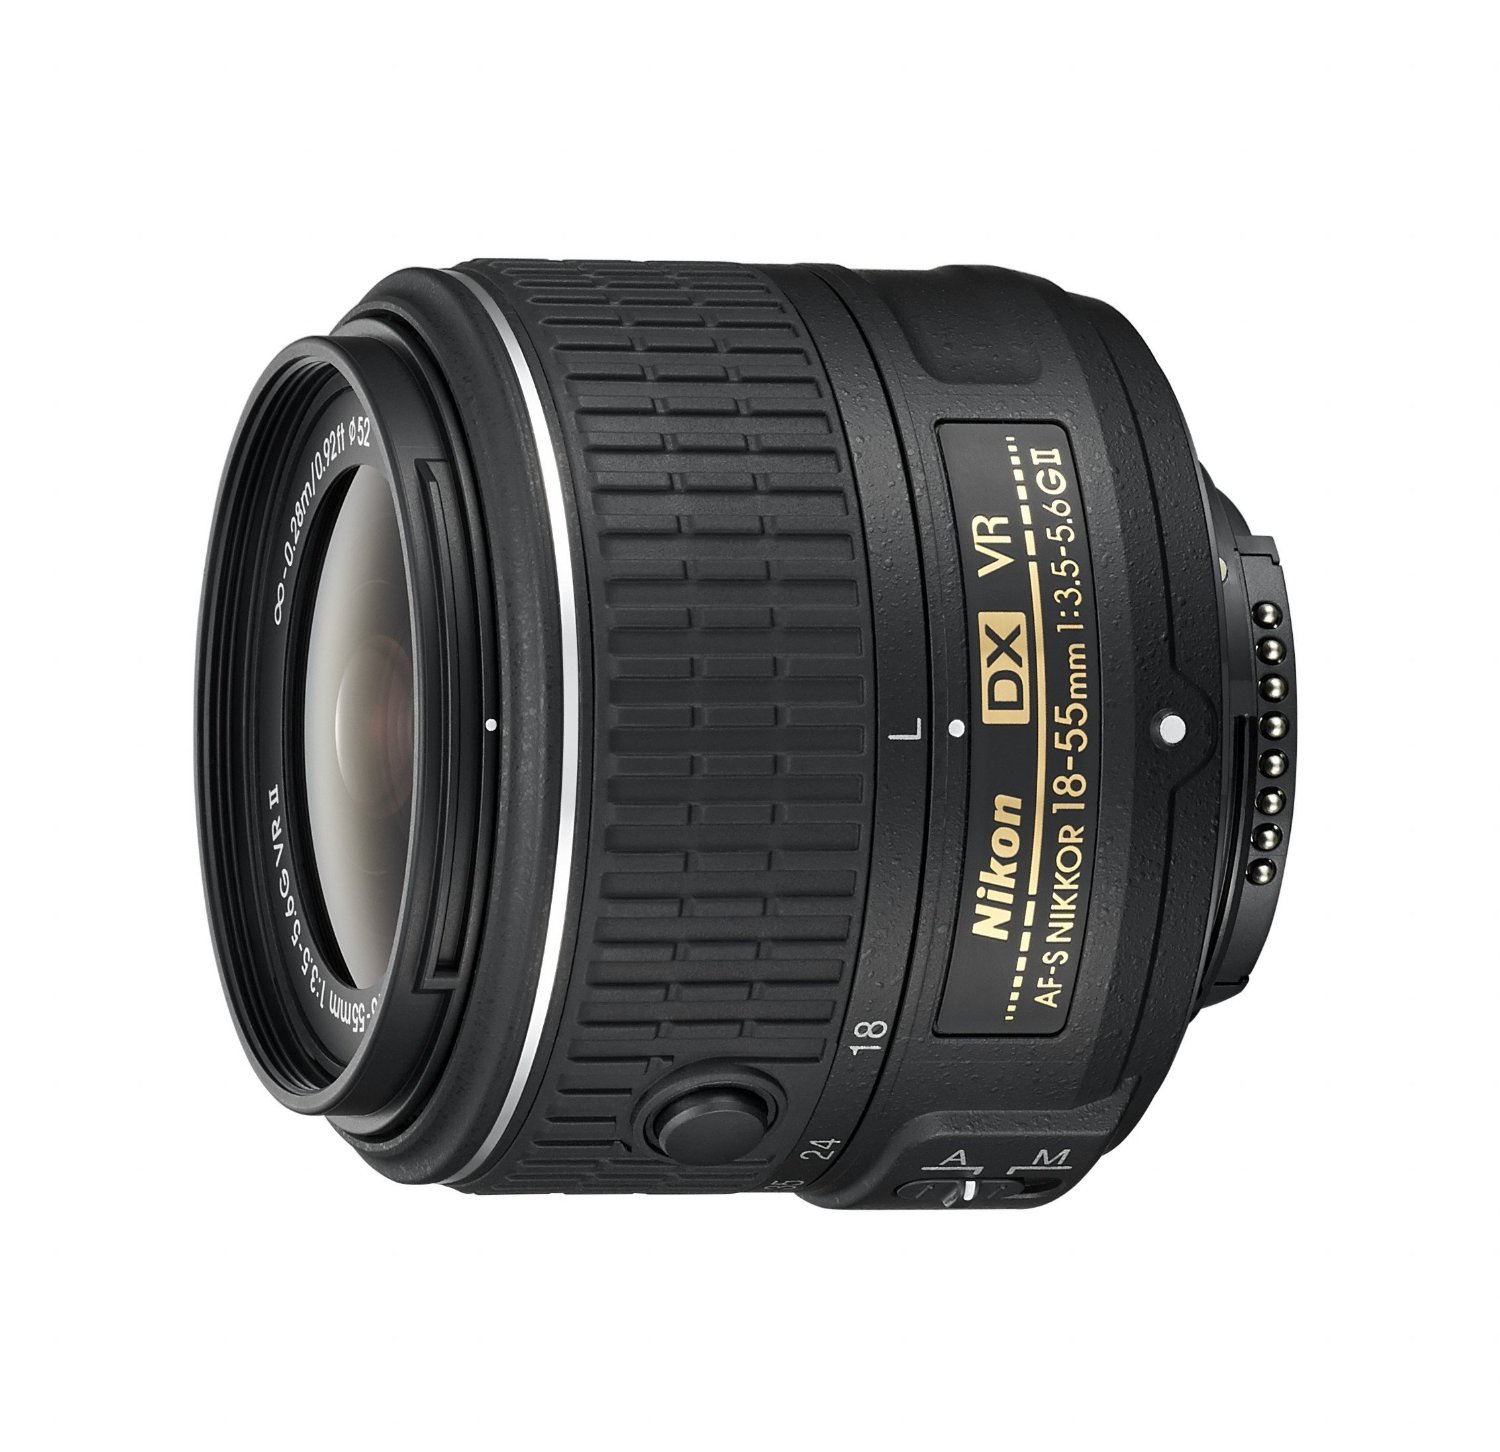 Nikon AF-S DX NIKKOR 18-55mm f / 3.5-5.6G 진동 감소 II 줌 렌즈 (DSLR 카메라 용 자동 초점 포함)